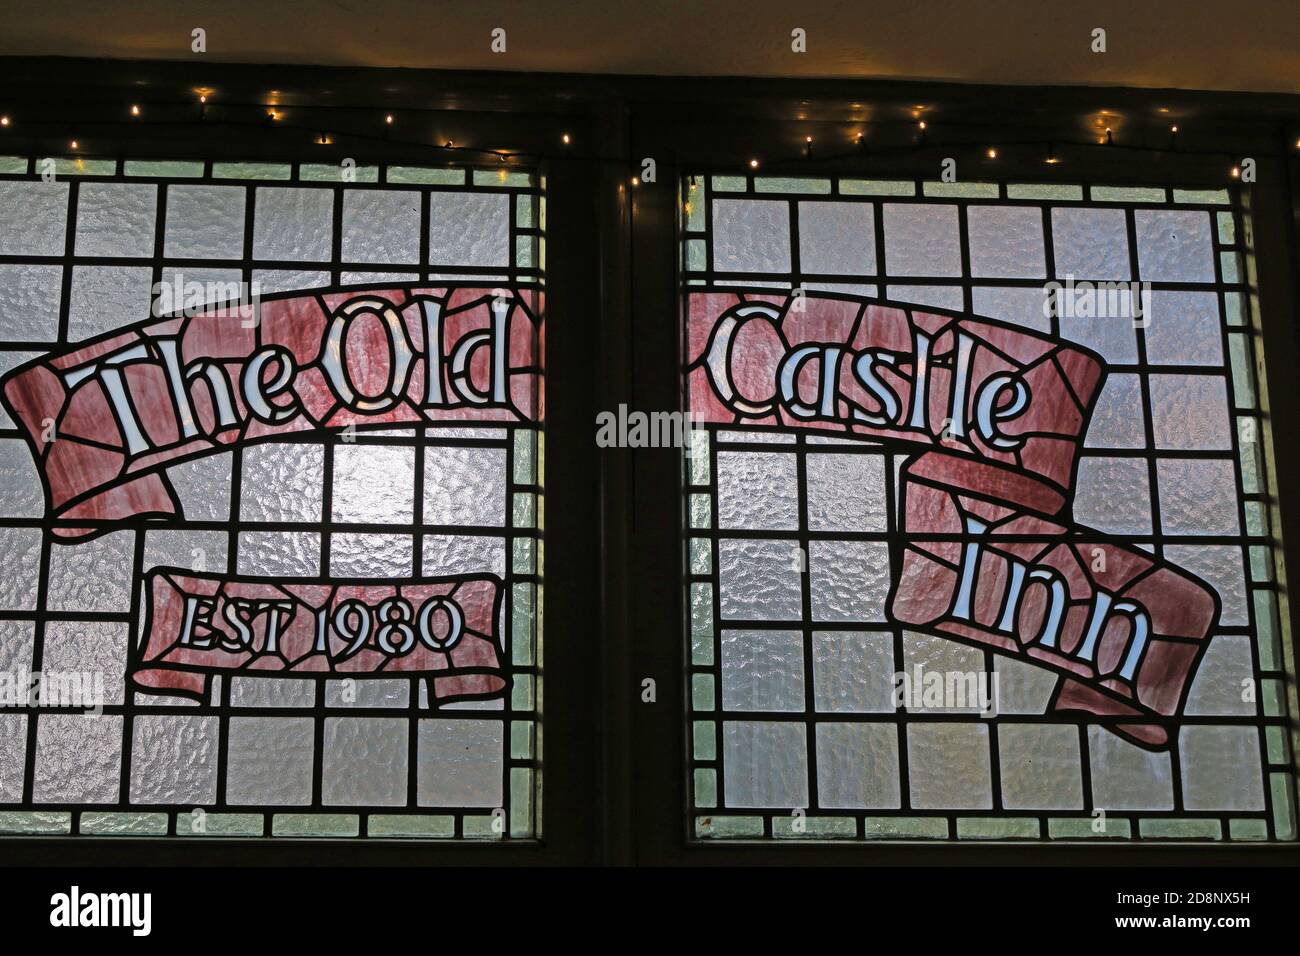 The Old Castle Inn, traditionnel Ales, vitrail, 1980, dans un bar/pub, Nottingham, centre-ville, Notinghamshire, Angleterre, Royaume-Uni Banque D'Images